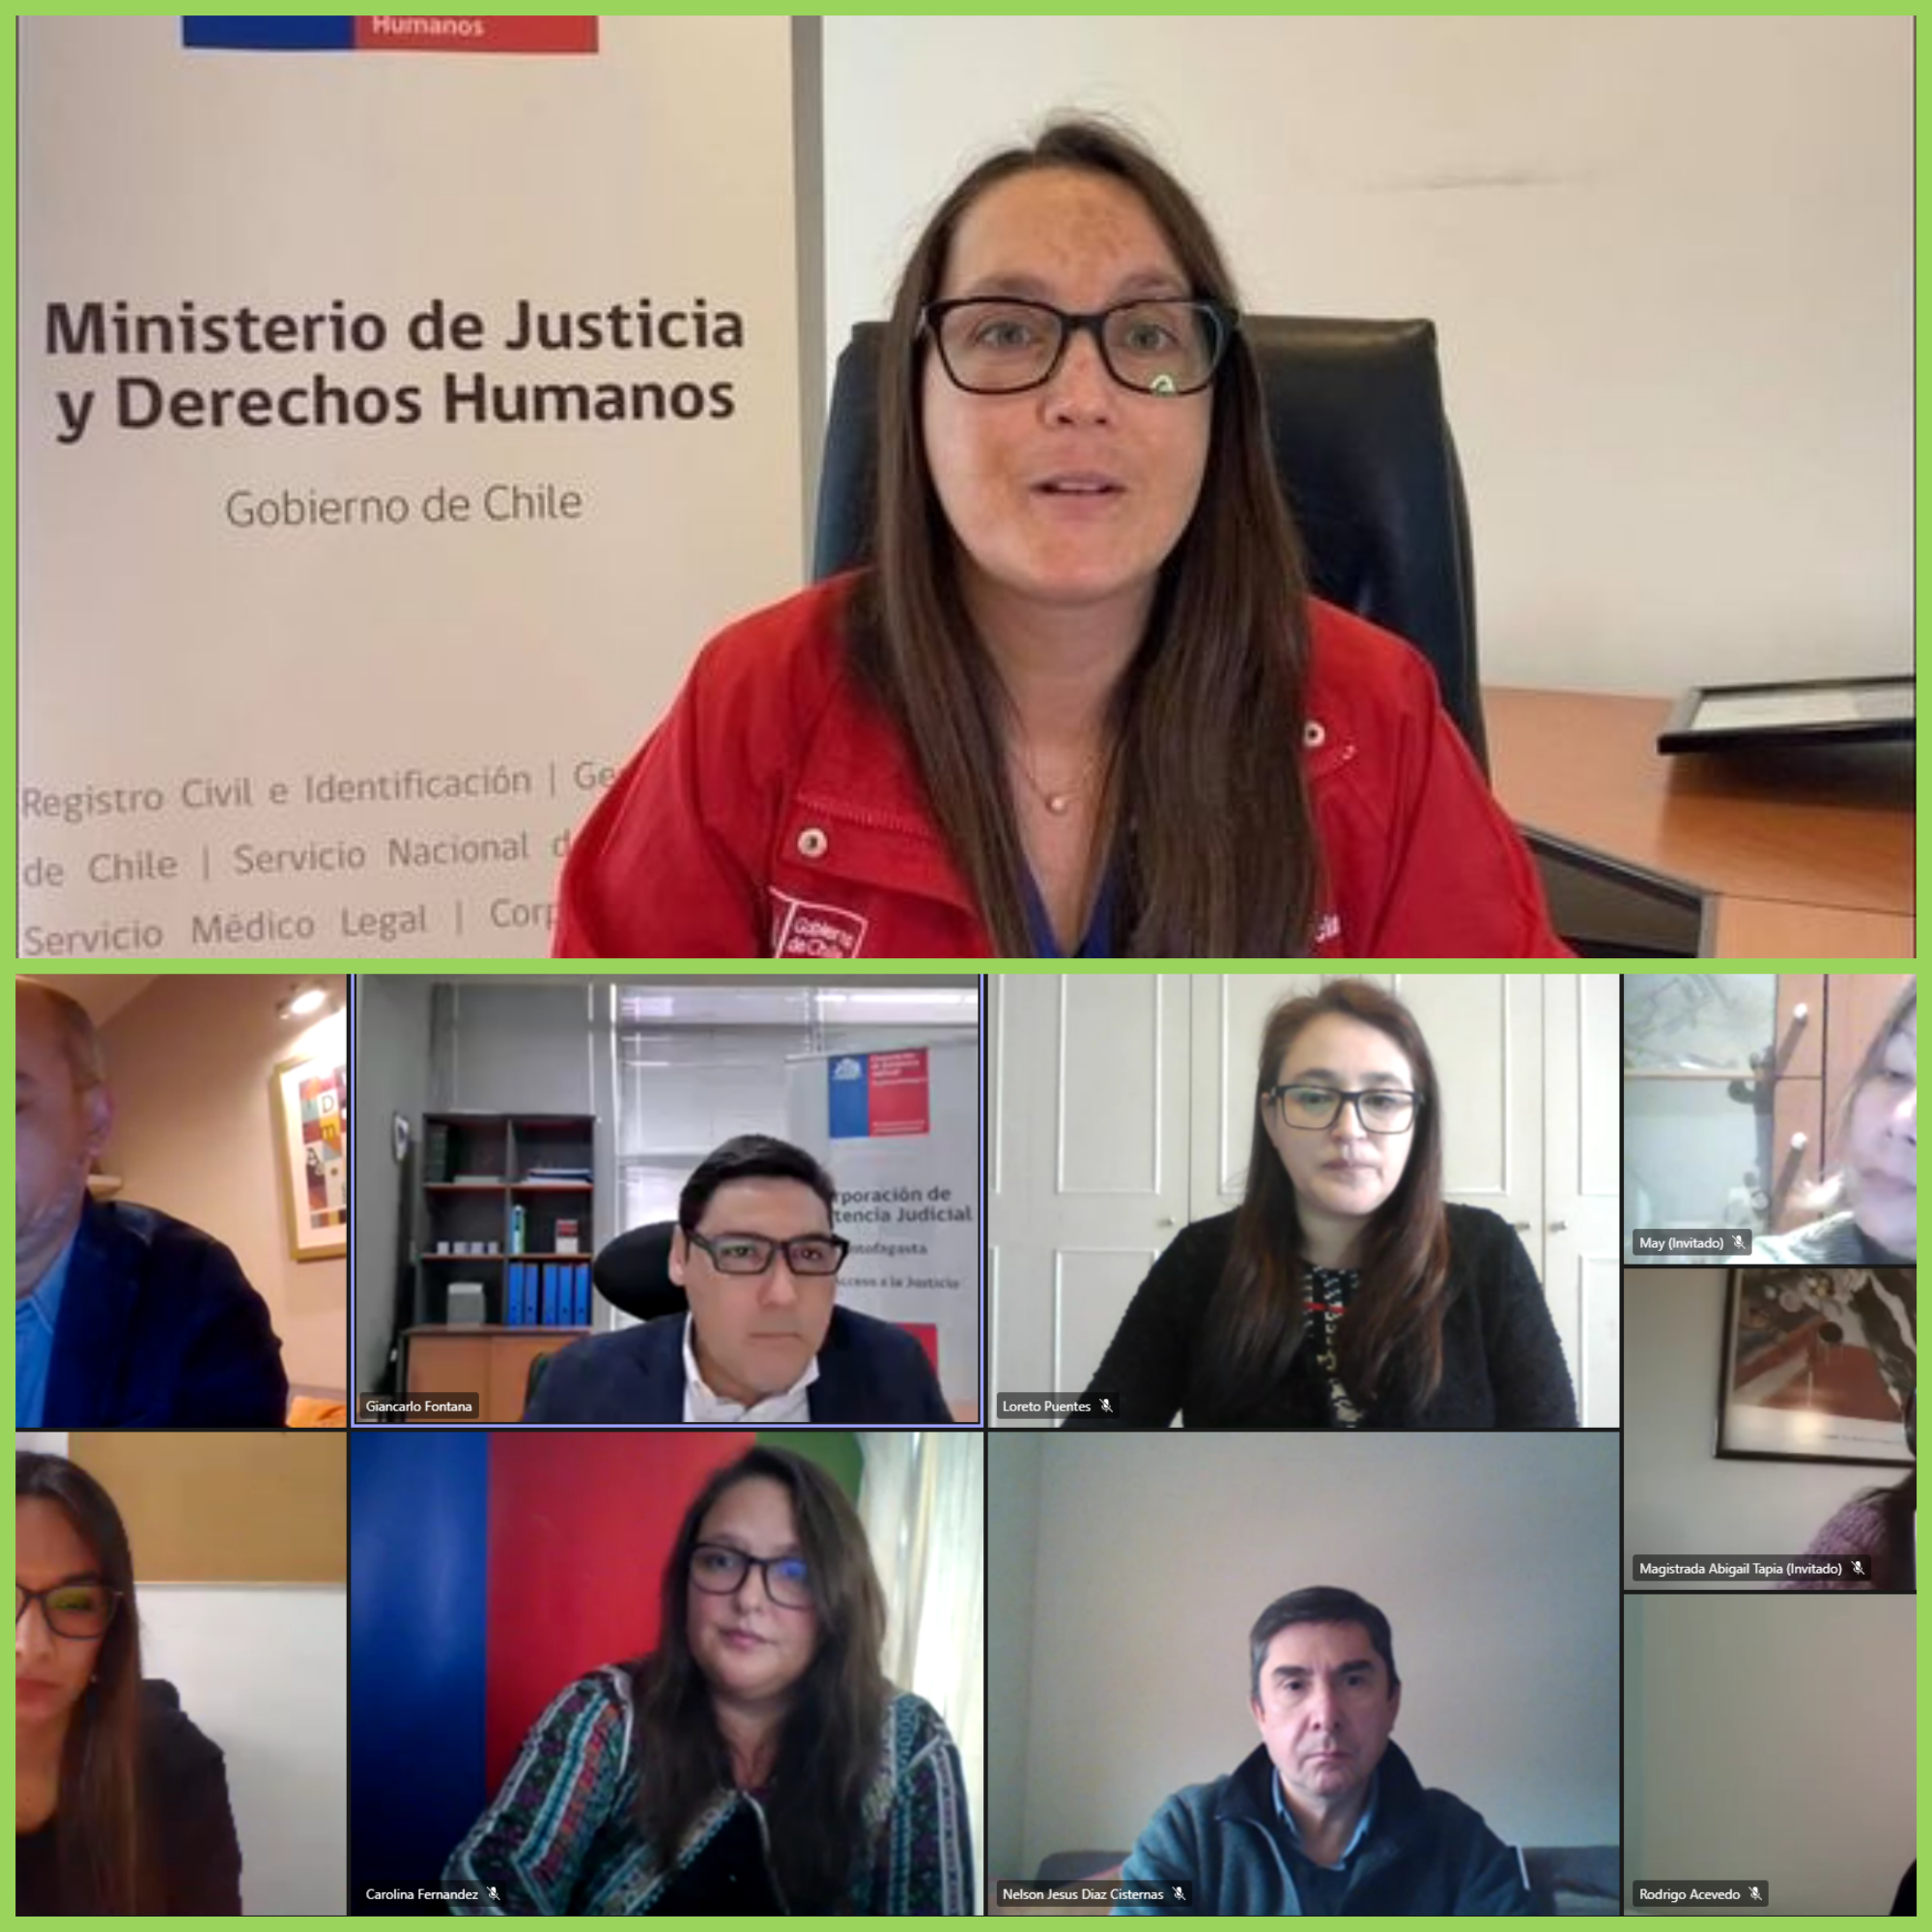 Herrramientas Tacnológicas son Evaluadas en Diálogos de Acceso a la Justicia en Región de Antofagasta